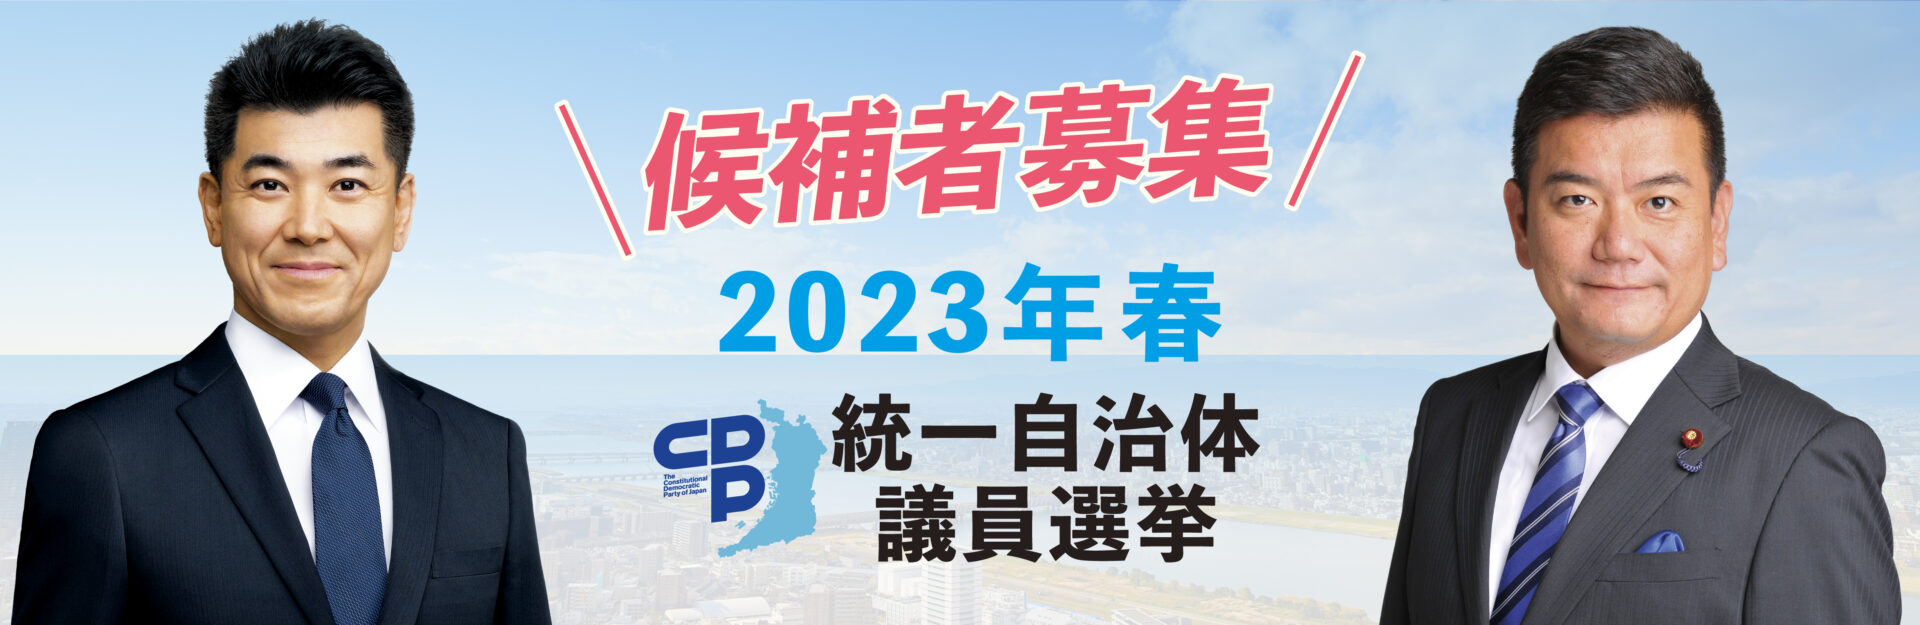 2023年春 統一自治体議員選挙 “候補者公募”